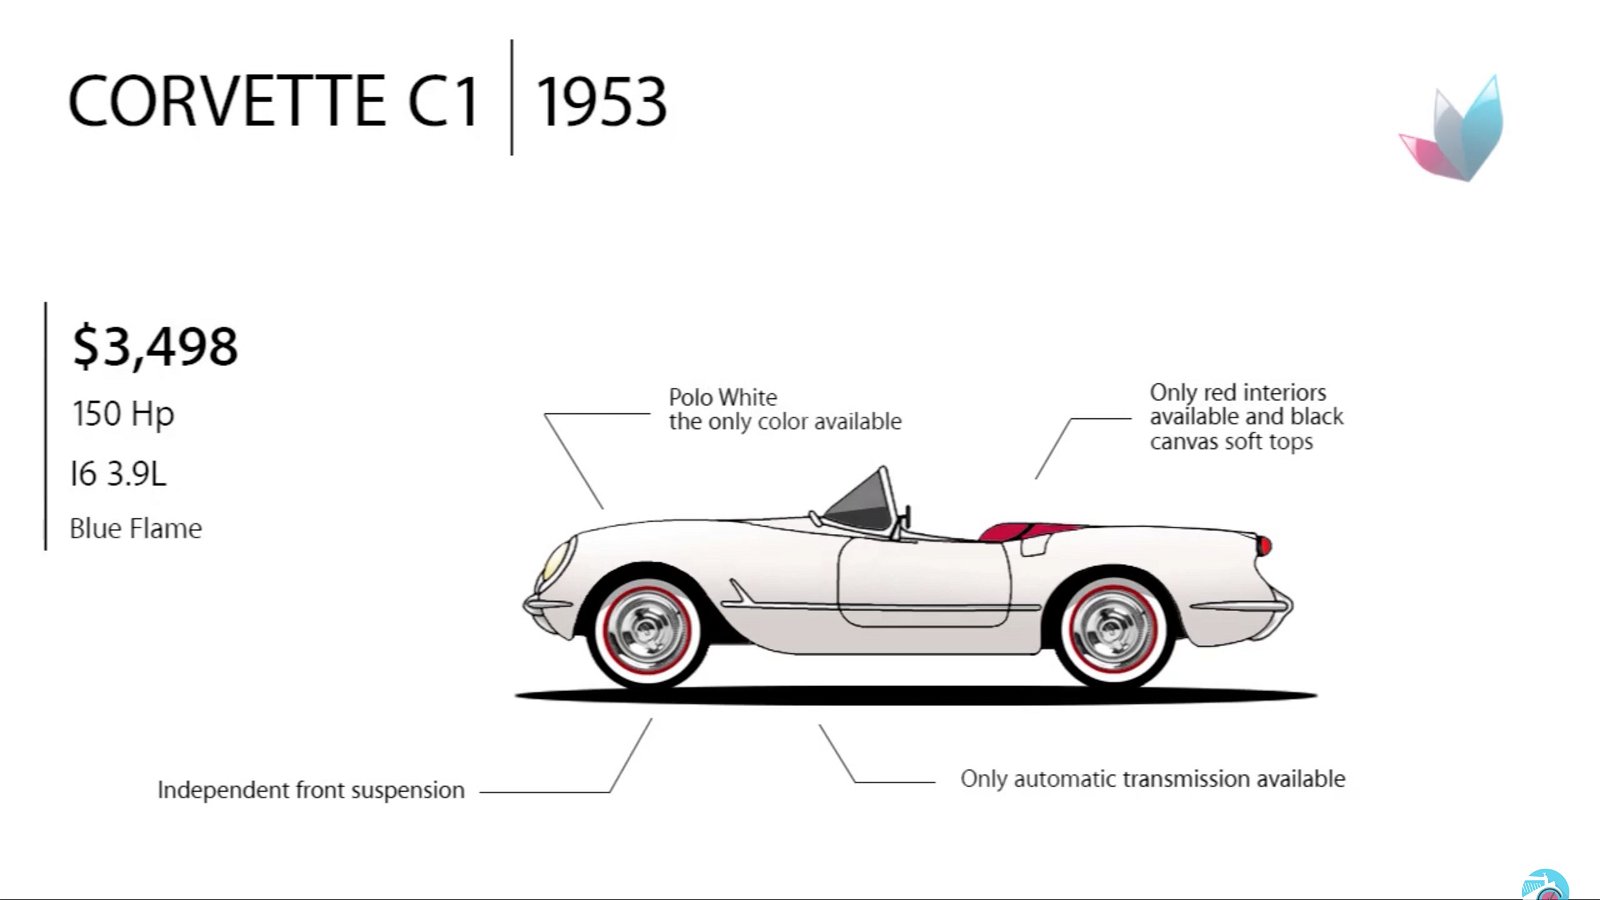 1953 Corvette C1